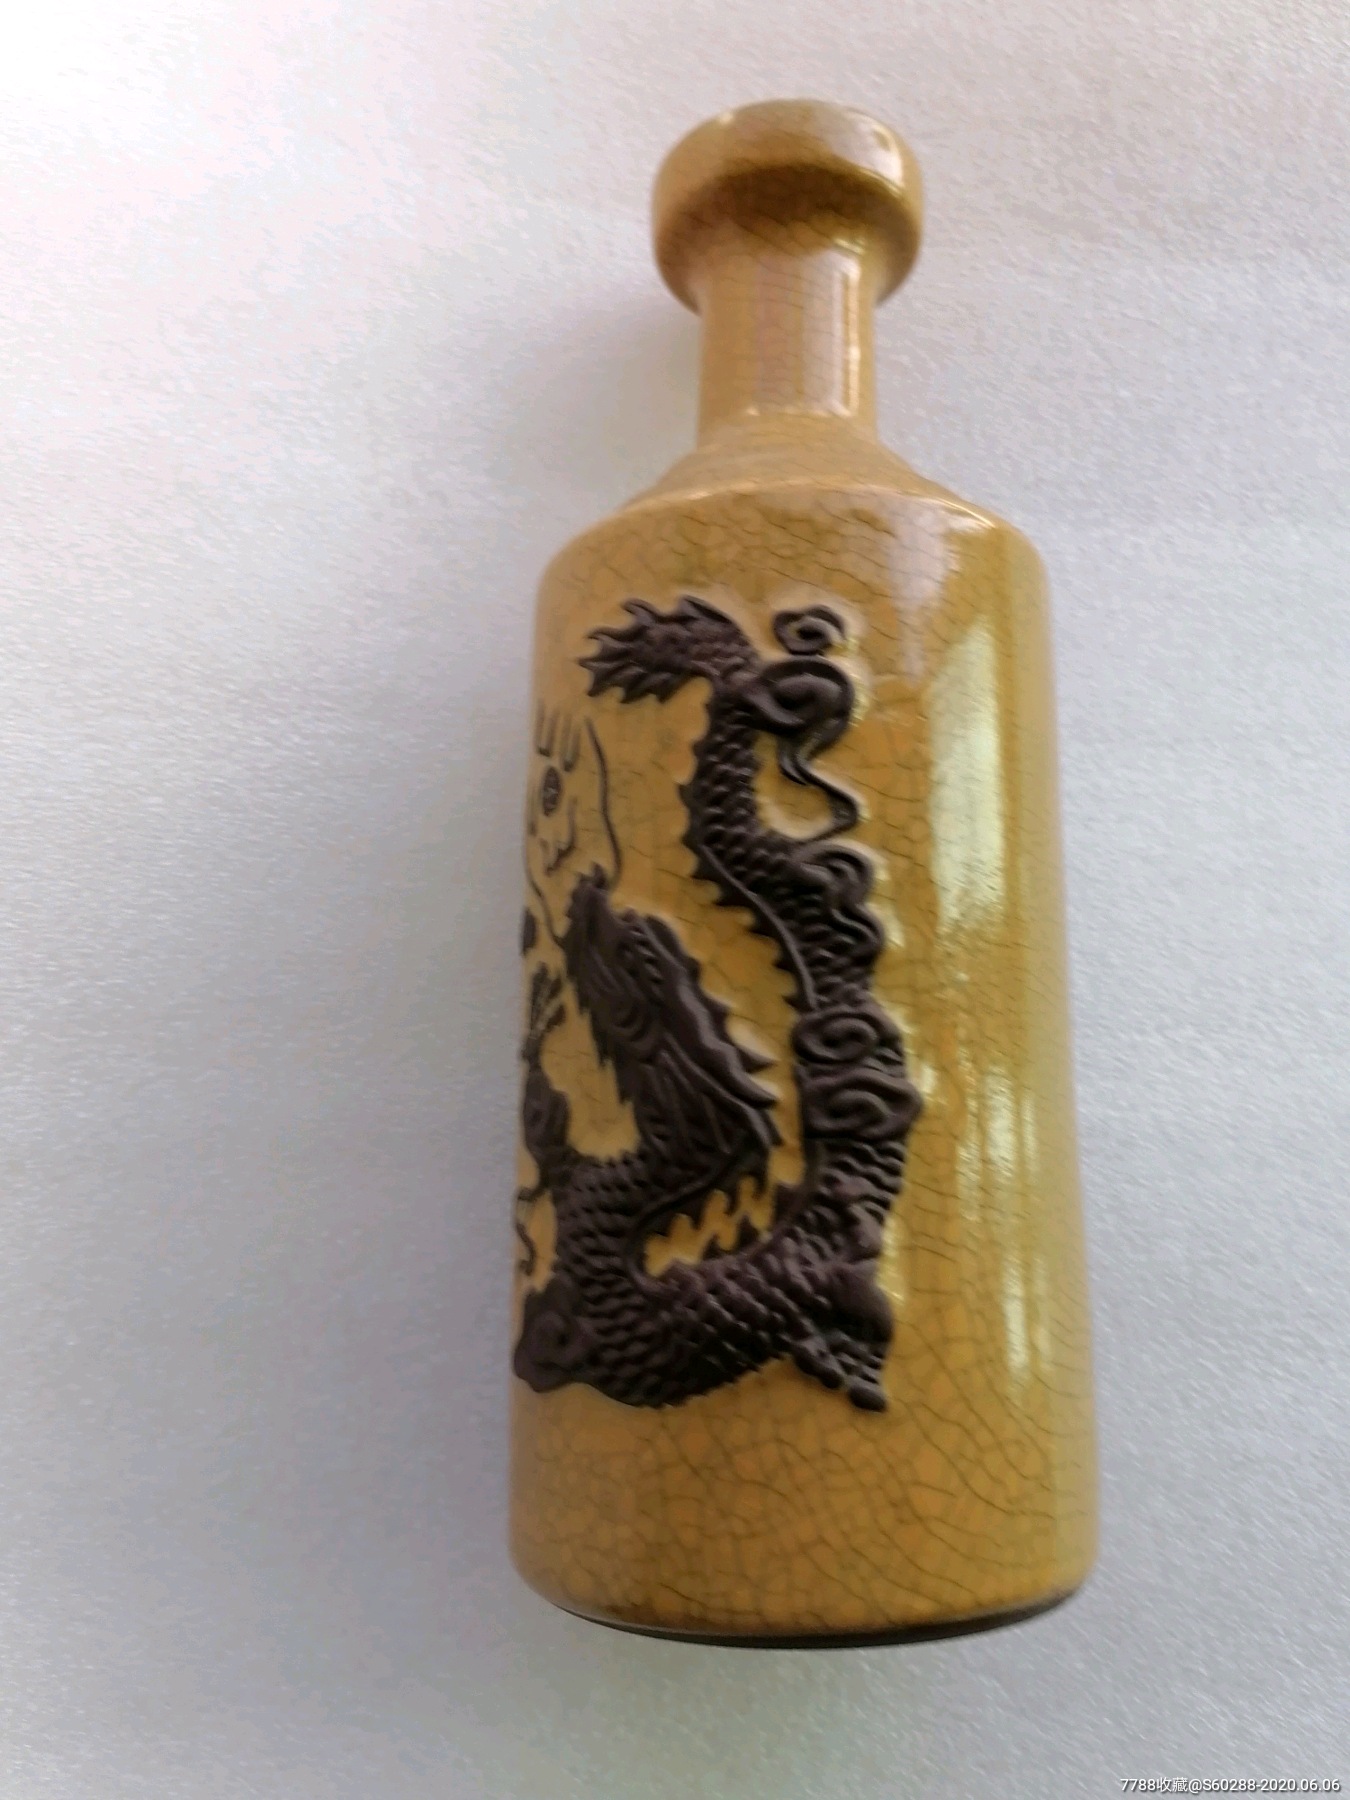 国酒茅台龙图酒酒瓶(包邮)-价格:300元-se73510988